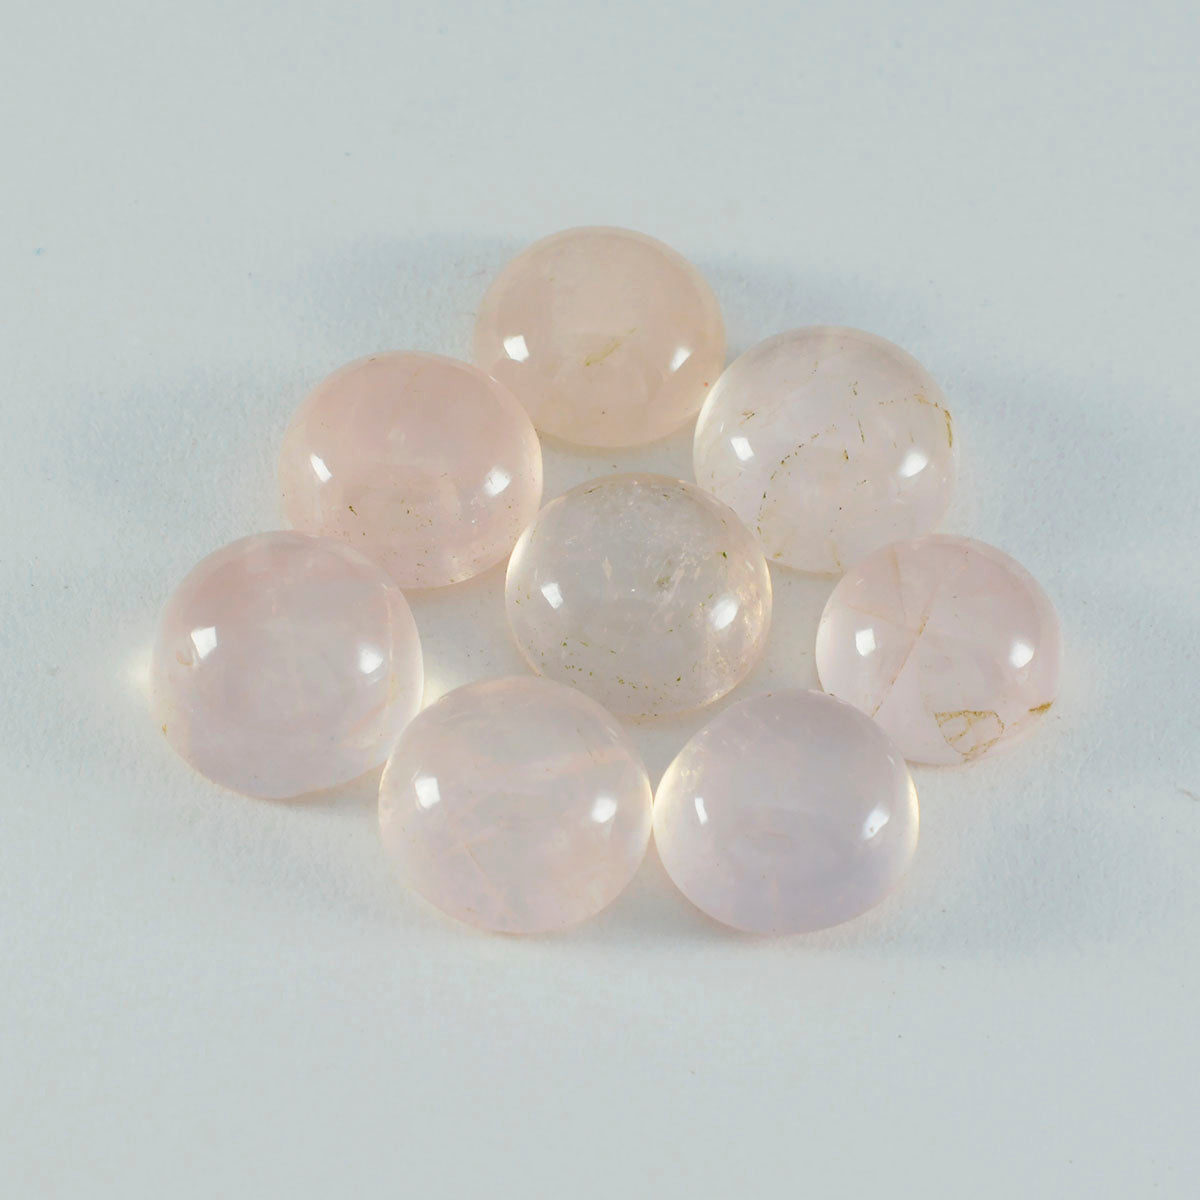 Riyogems, 1 pieza, cabujón de cuarzo rosa, 10x10mm, forma redonda, gemas de calidad atractiva